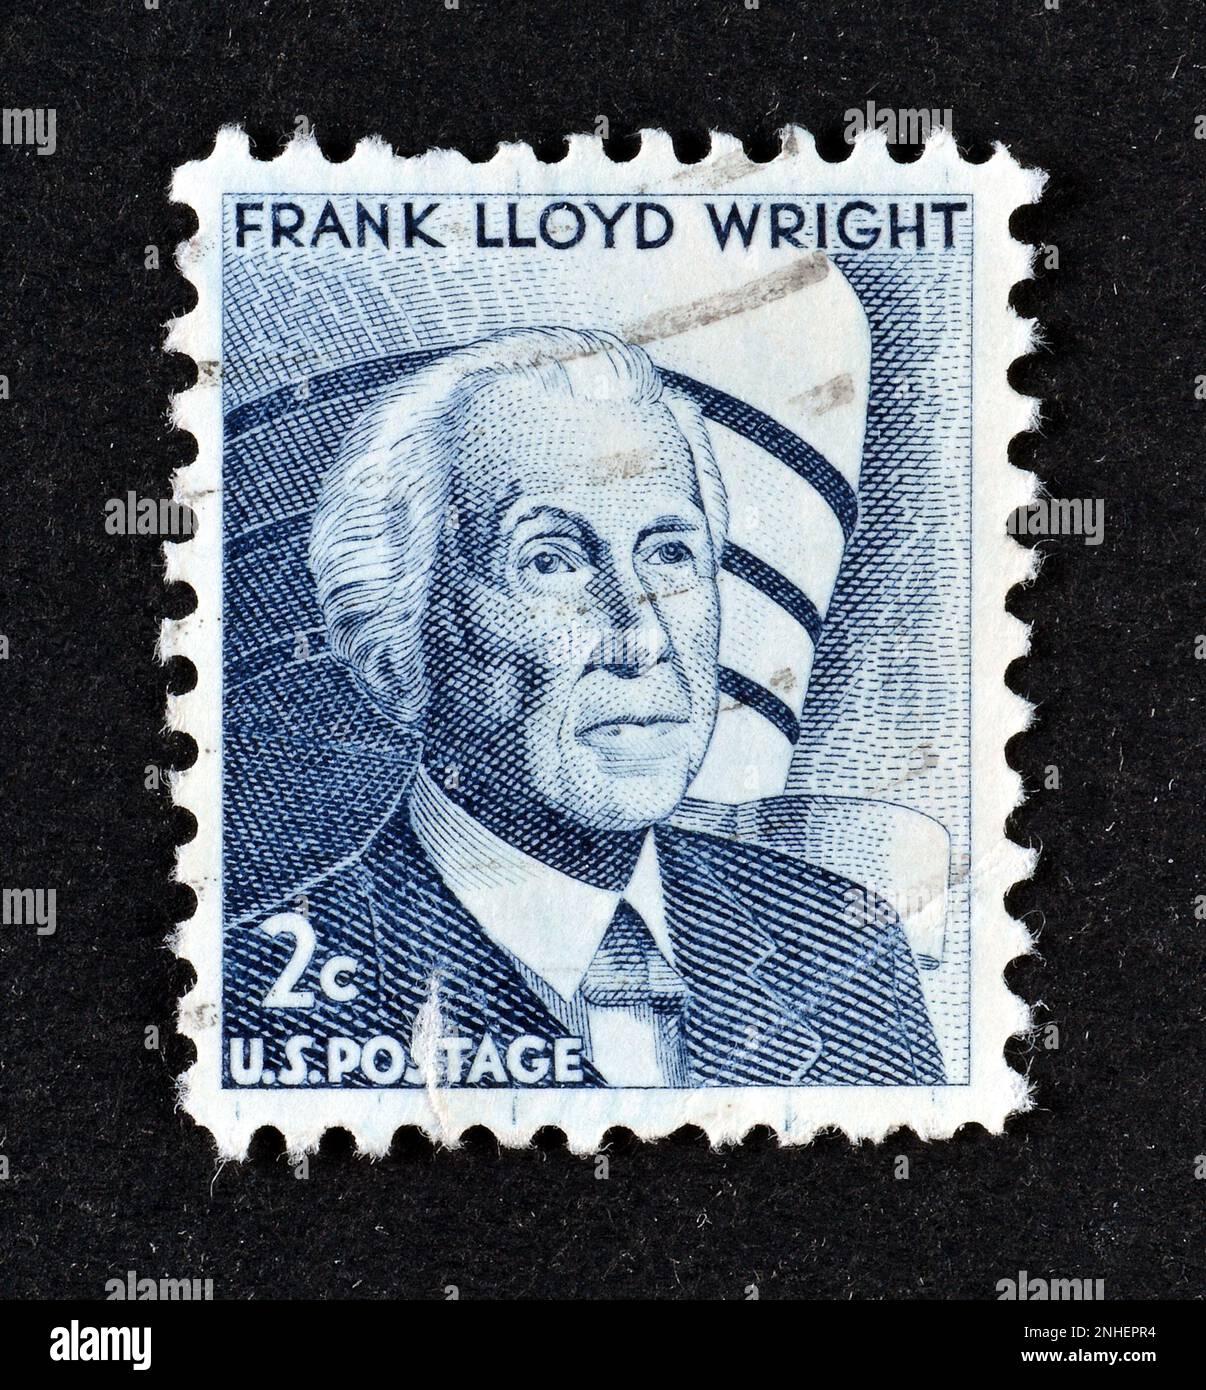 Von den USA gedruckte Briefmarke, die ein Porträt von Frank Lloyd Wright zeigt, Architekt, Designer, Schriftsteller und Pädagogen, Ungefähr 1966 Stockfoto